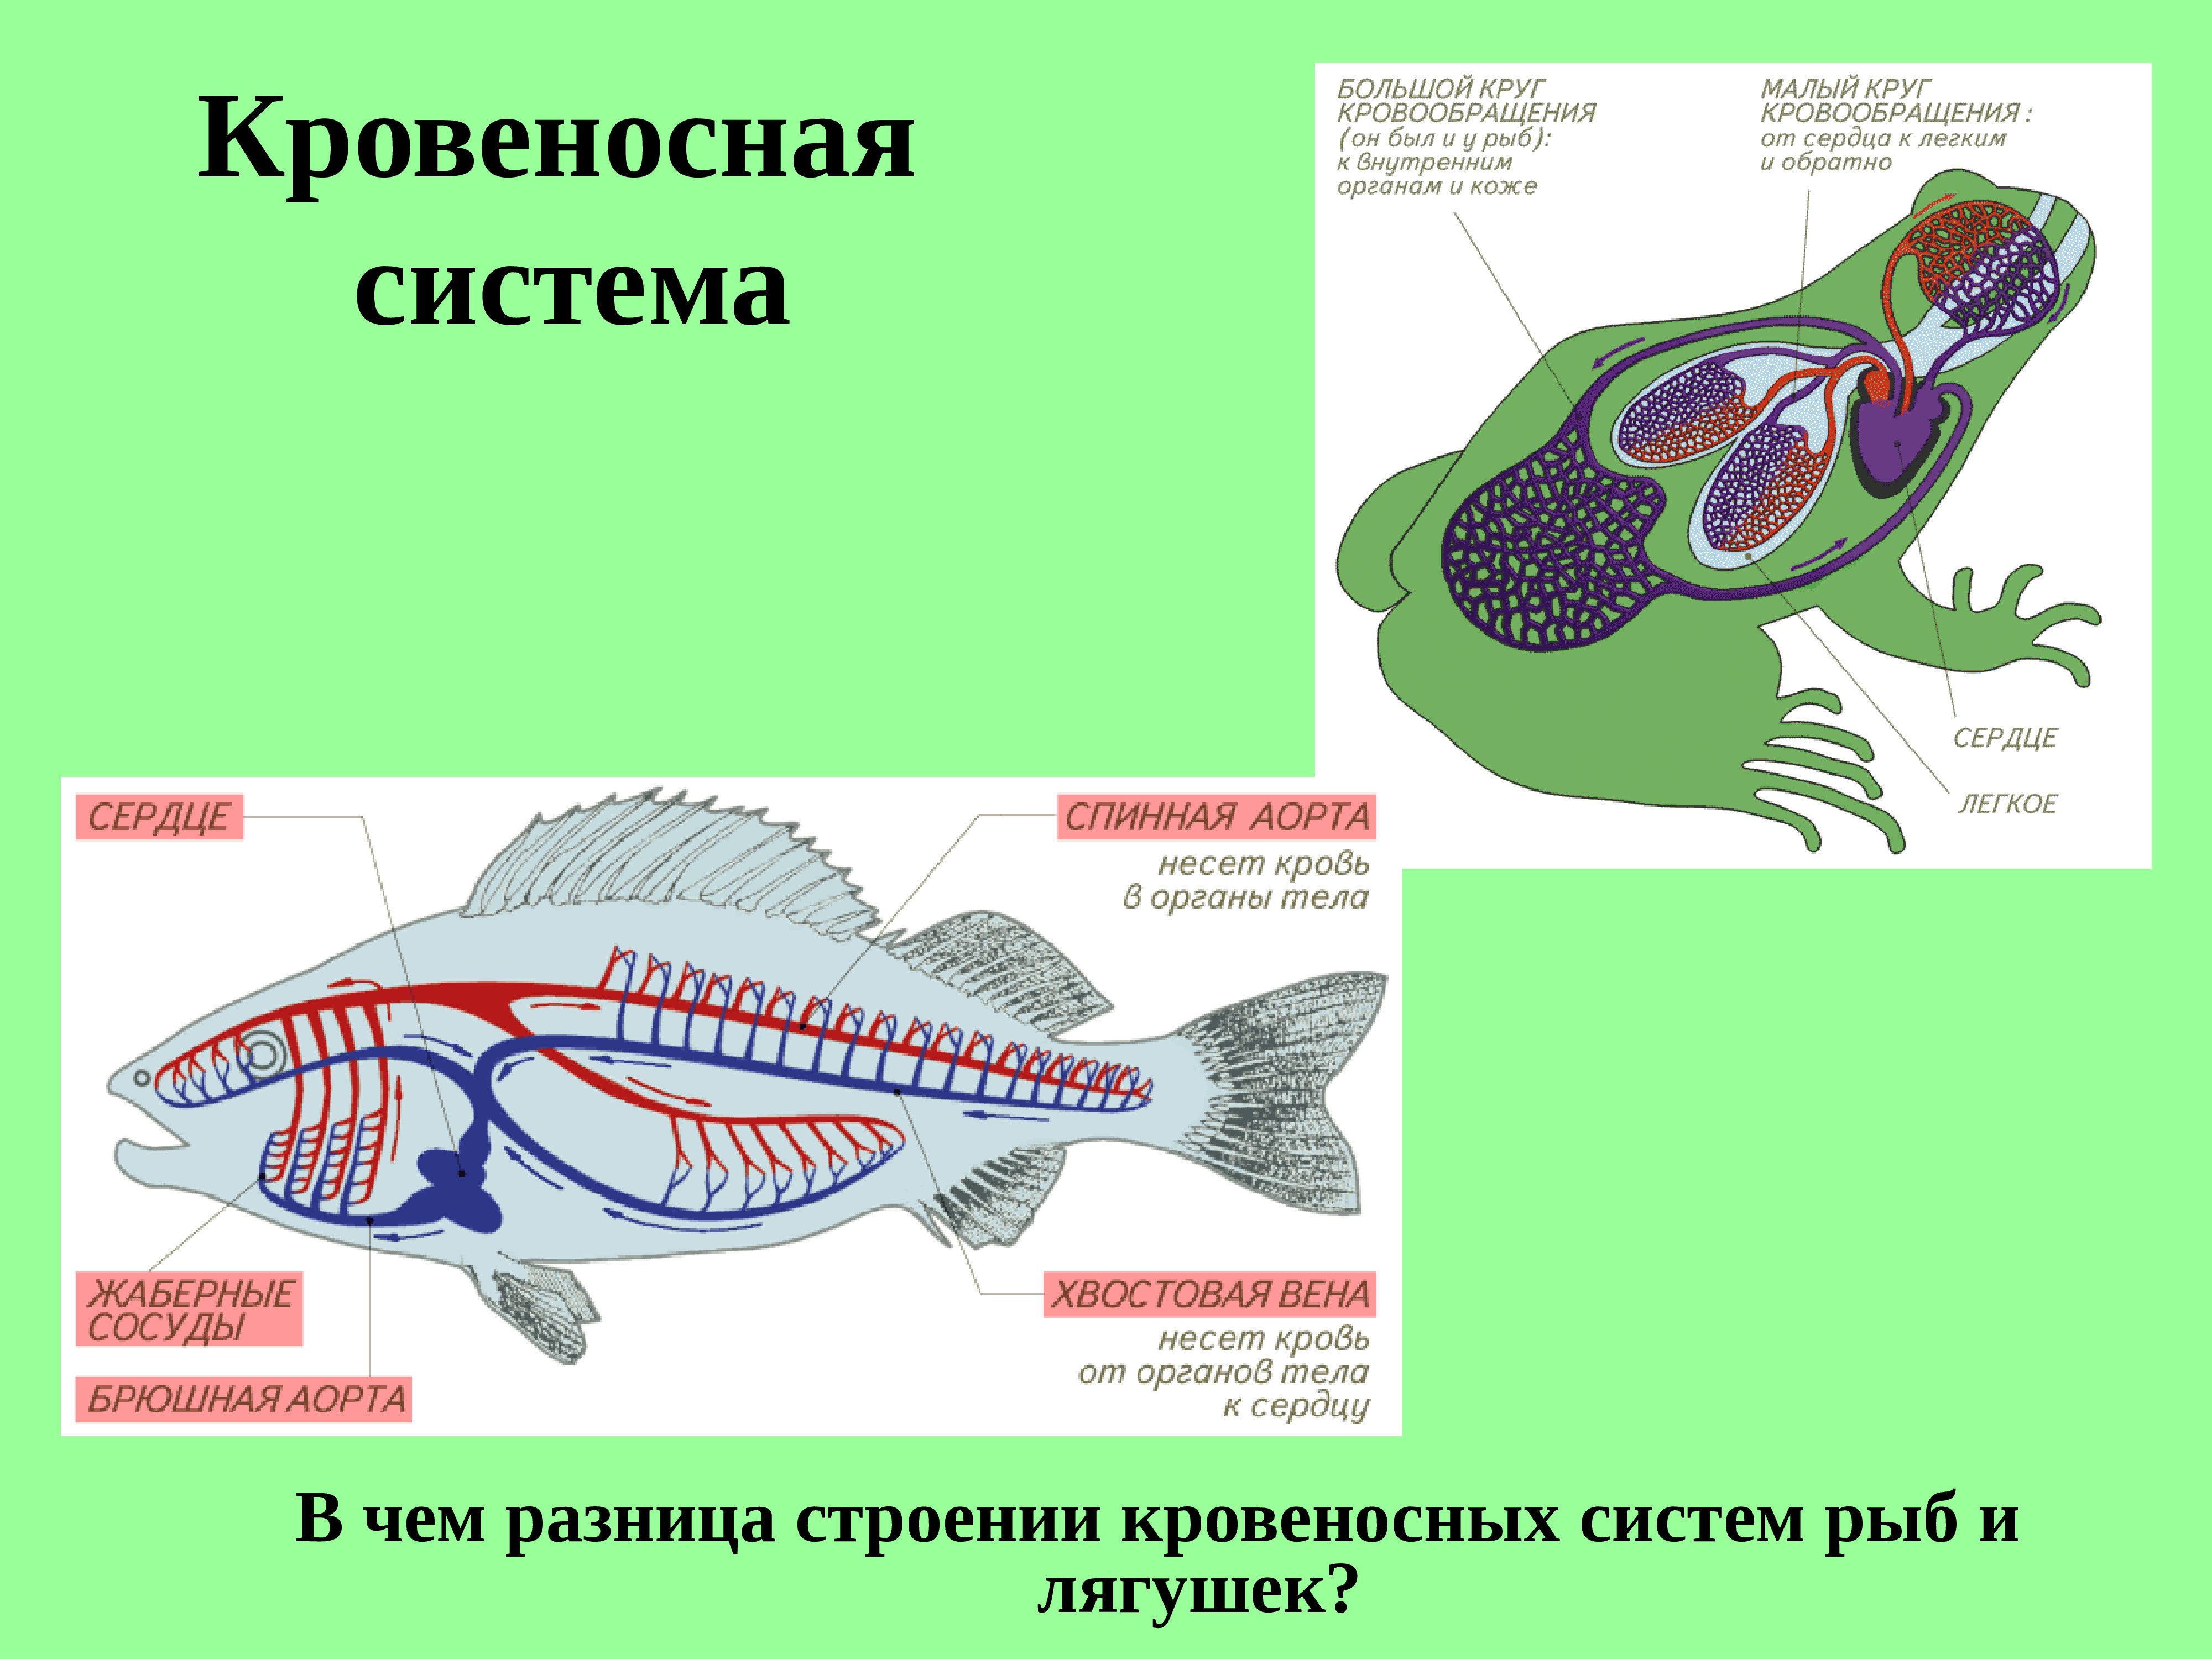 Кровеносная система рыб и земноводных